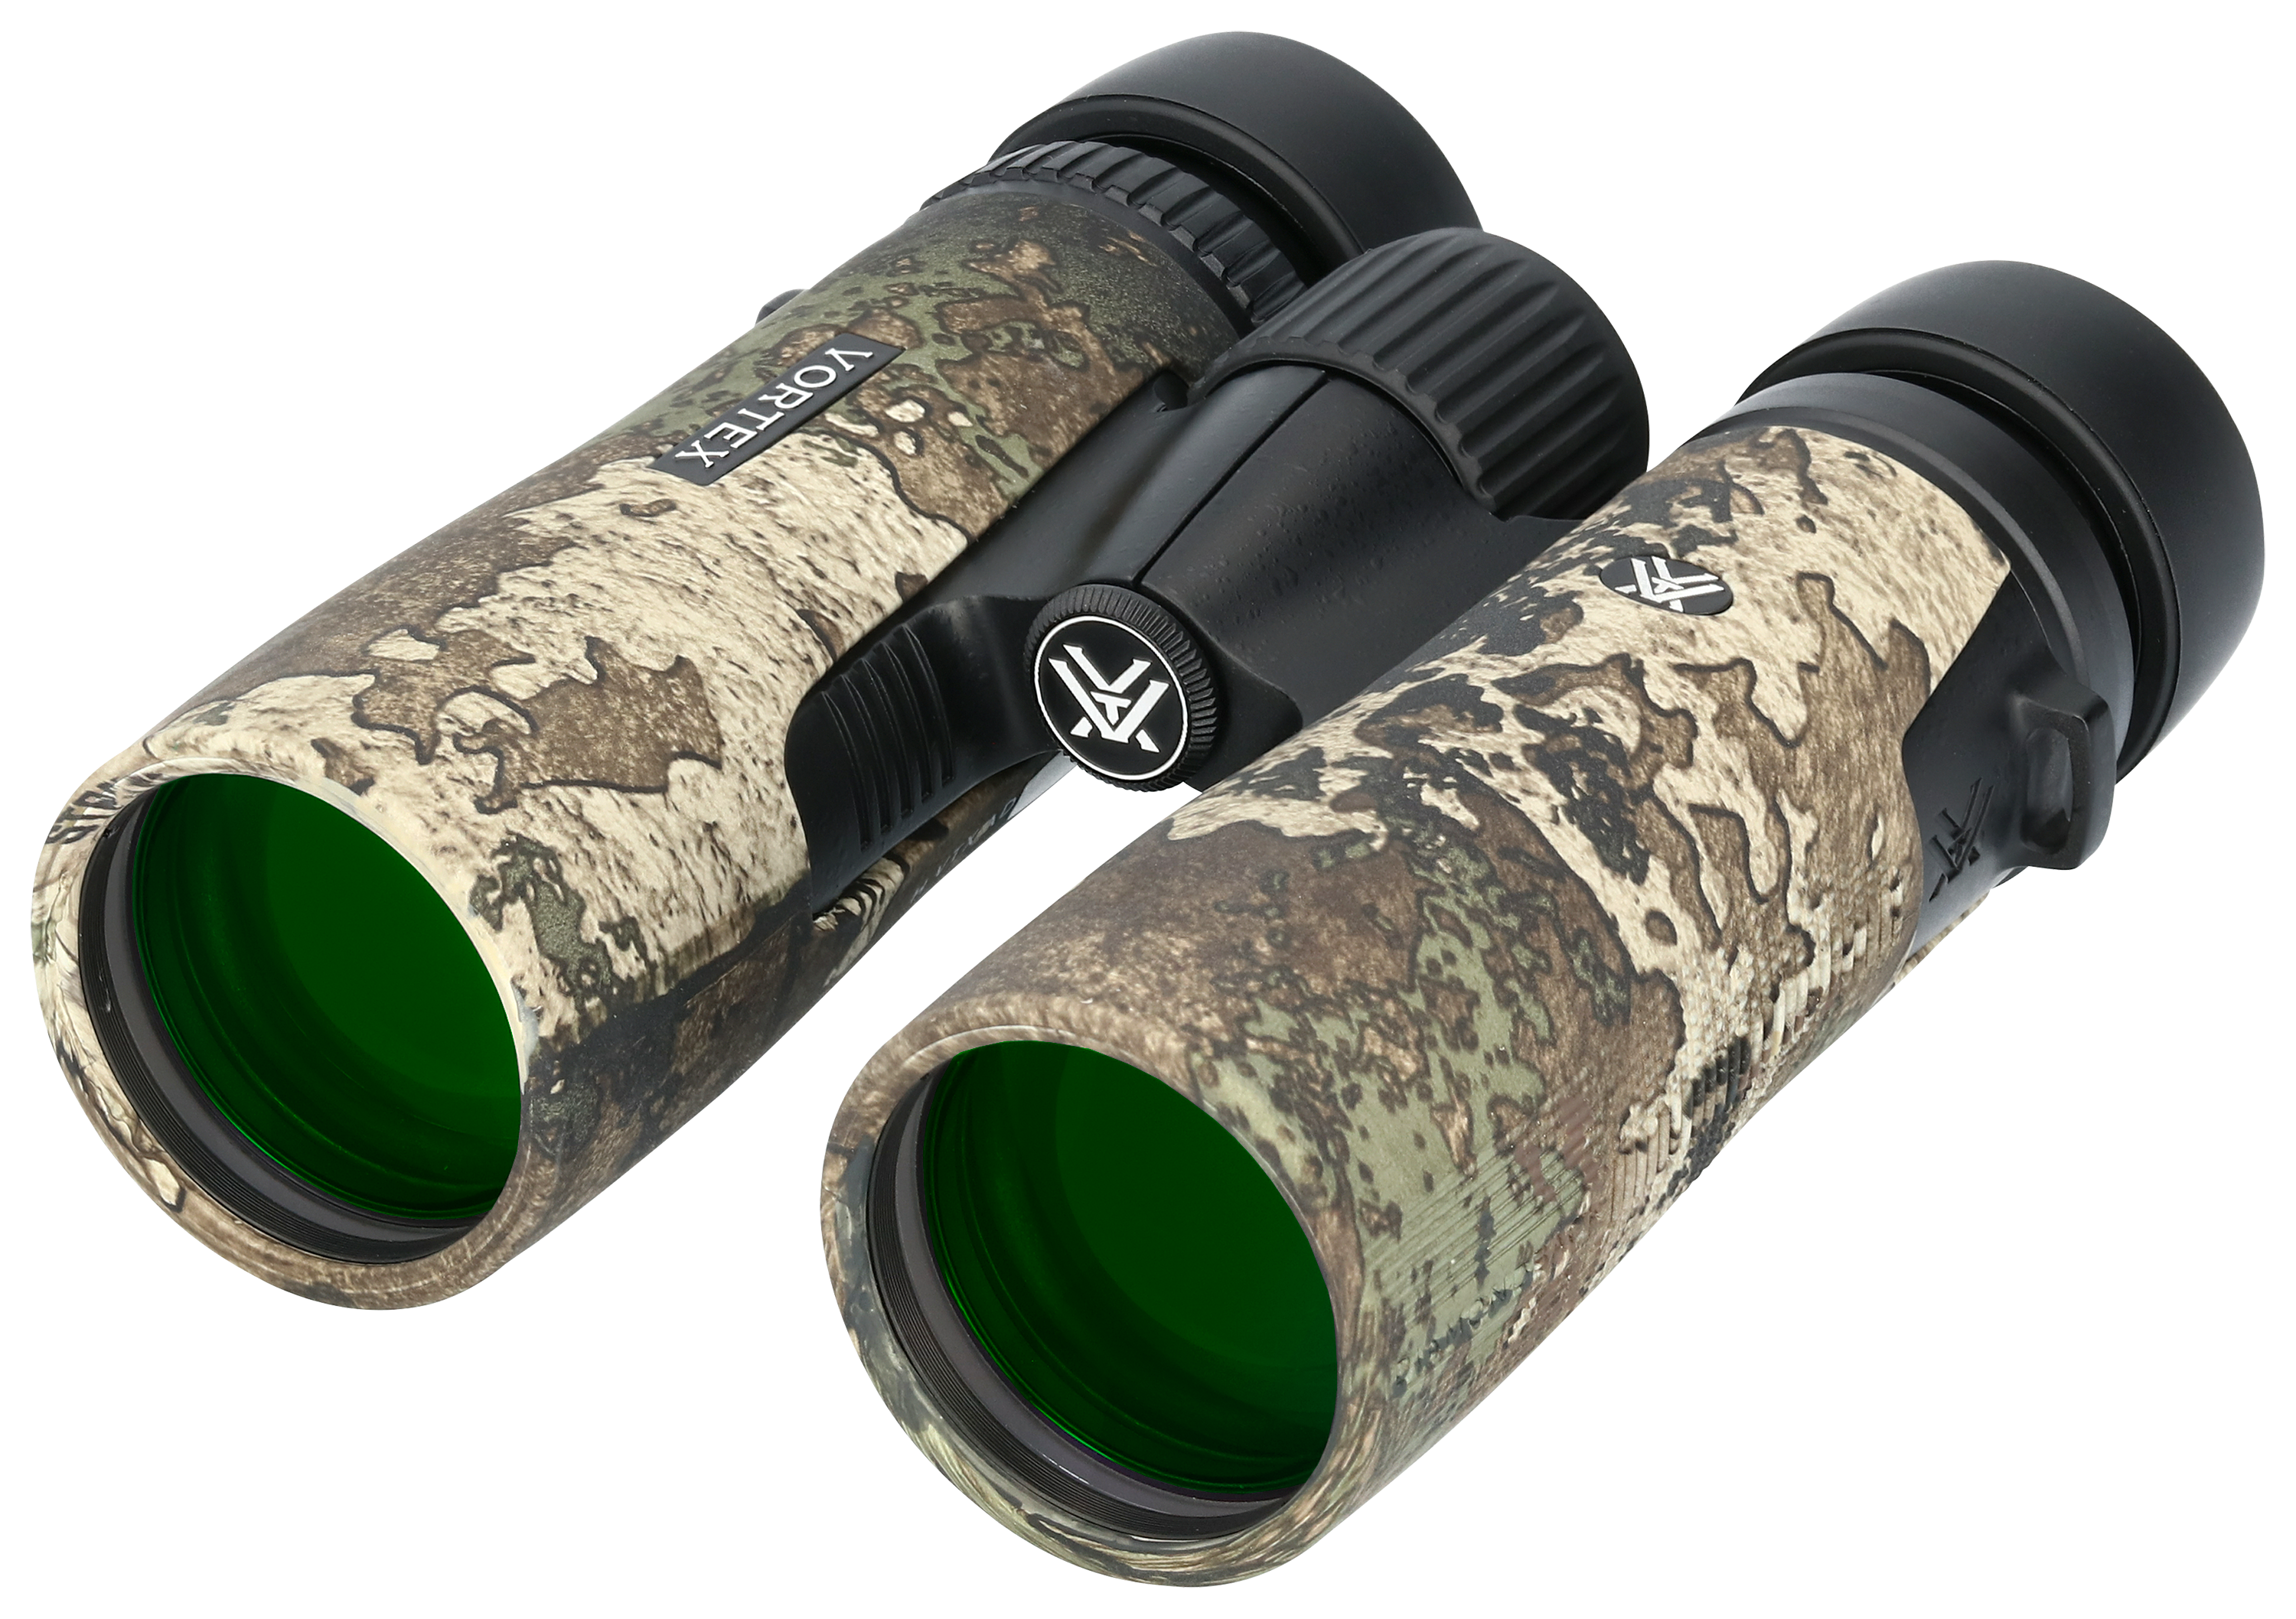 Vortex Diamondback HD Binoculars in TrueTimber Strata - 10x42mm